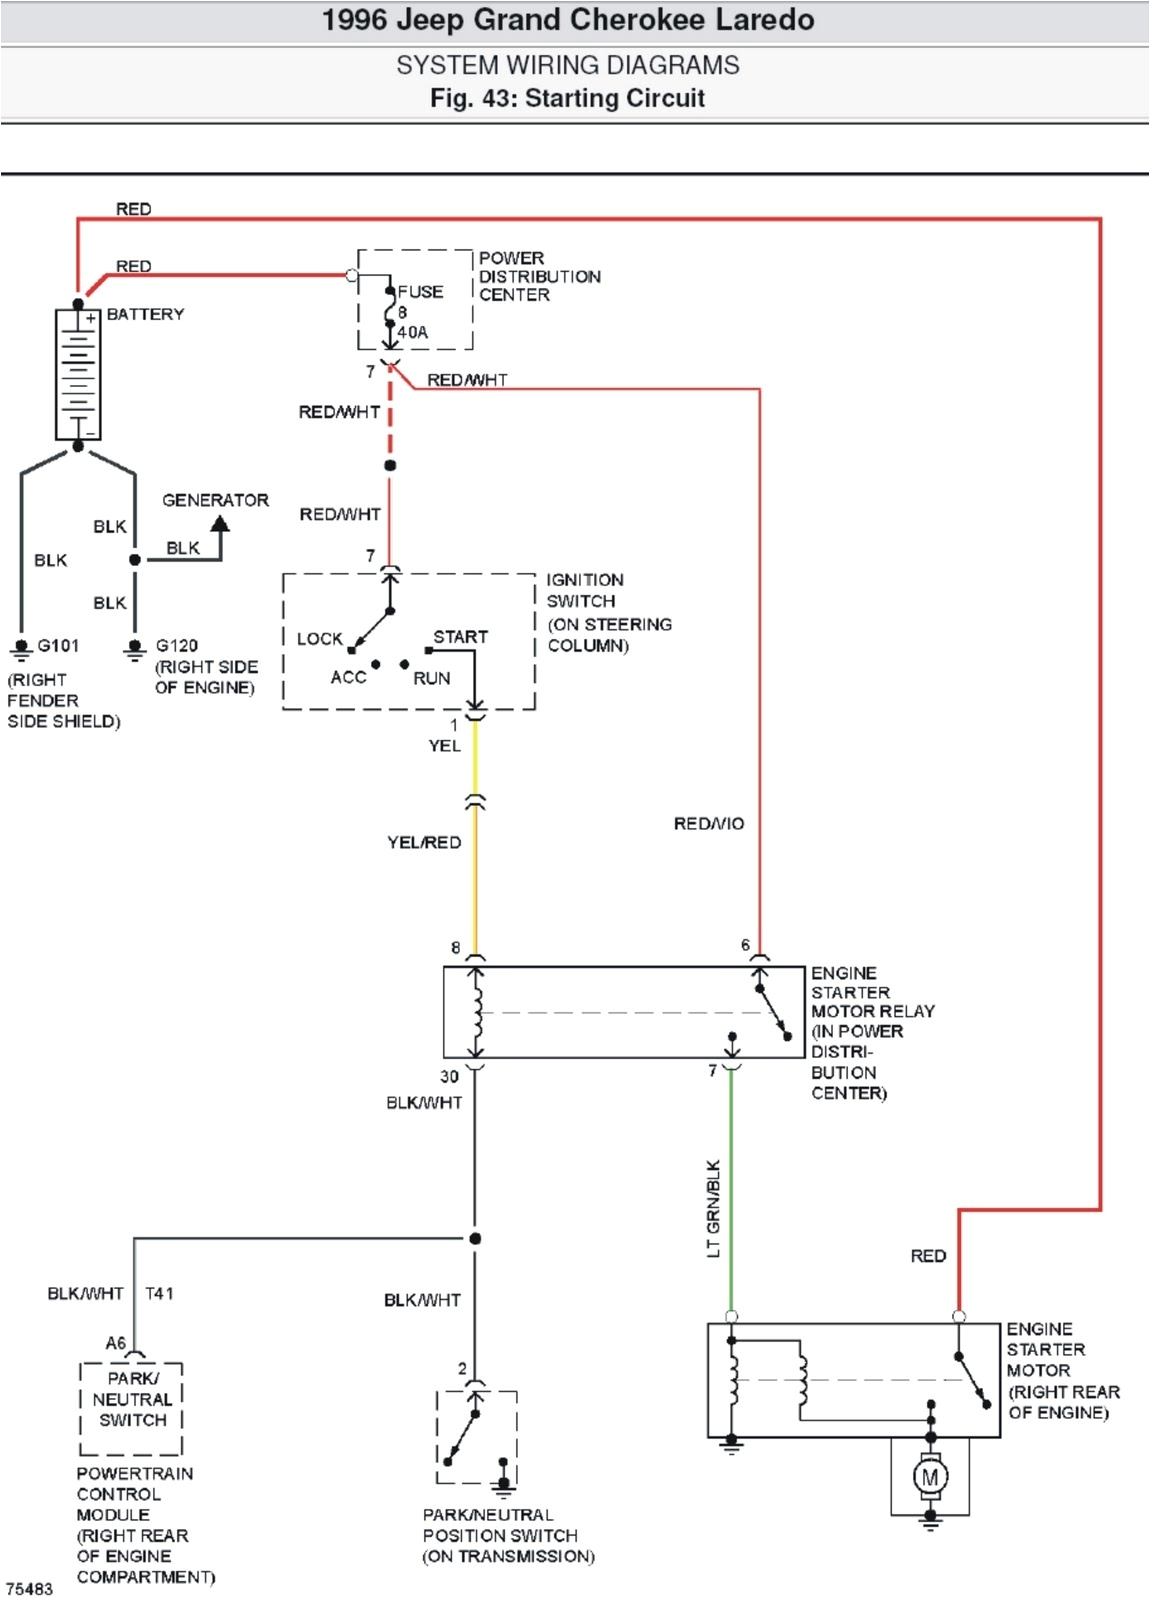 ignition switch schematic 1996 book diagram schema 96 jeep cherokee ignition switch wiring wiring diagram database